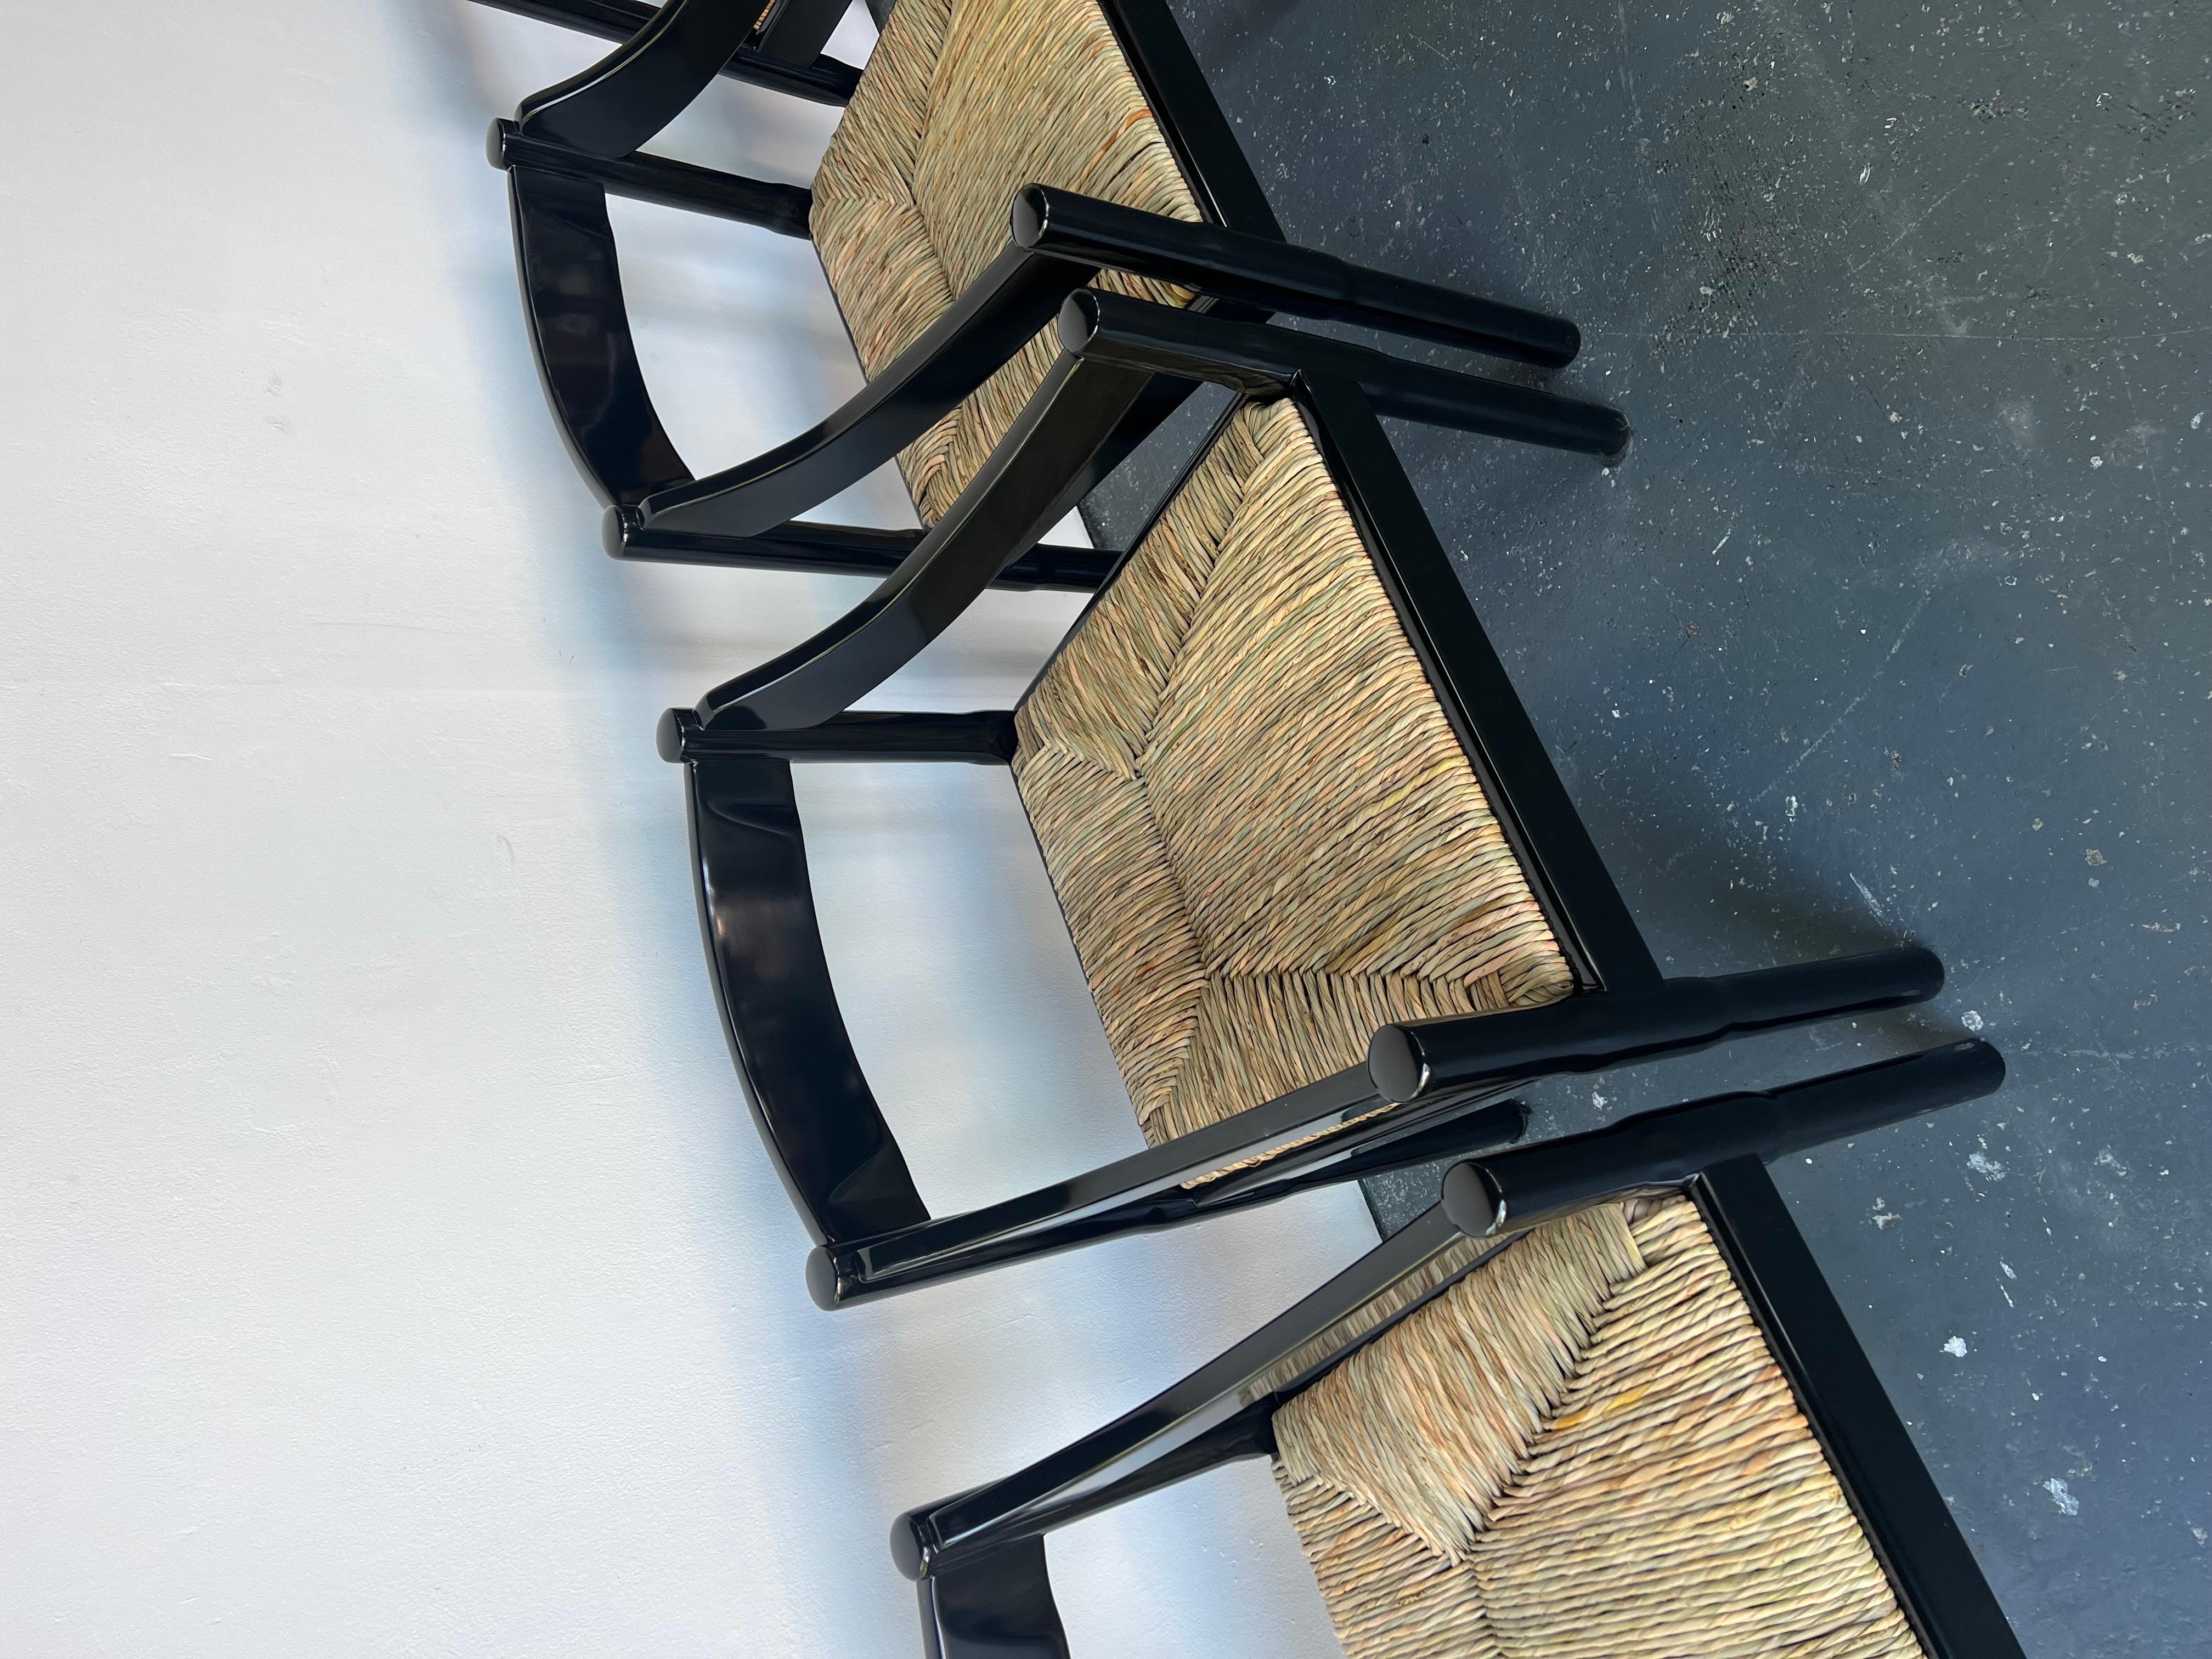 Ensemble de 2 chaises Carimate Carver en noir brillant par Vico Magistretti

La chaise Carimate est née lorsque Vico Magistretti (1920-2006) a conçu des sièges pour le club de golf Carimate en Italie en 1959. Le design, qui combine l'artisanat